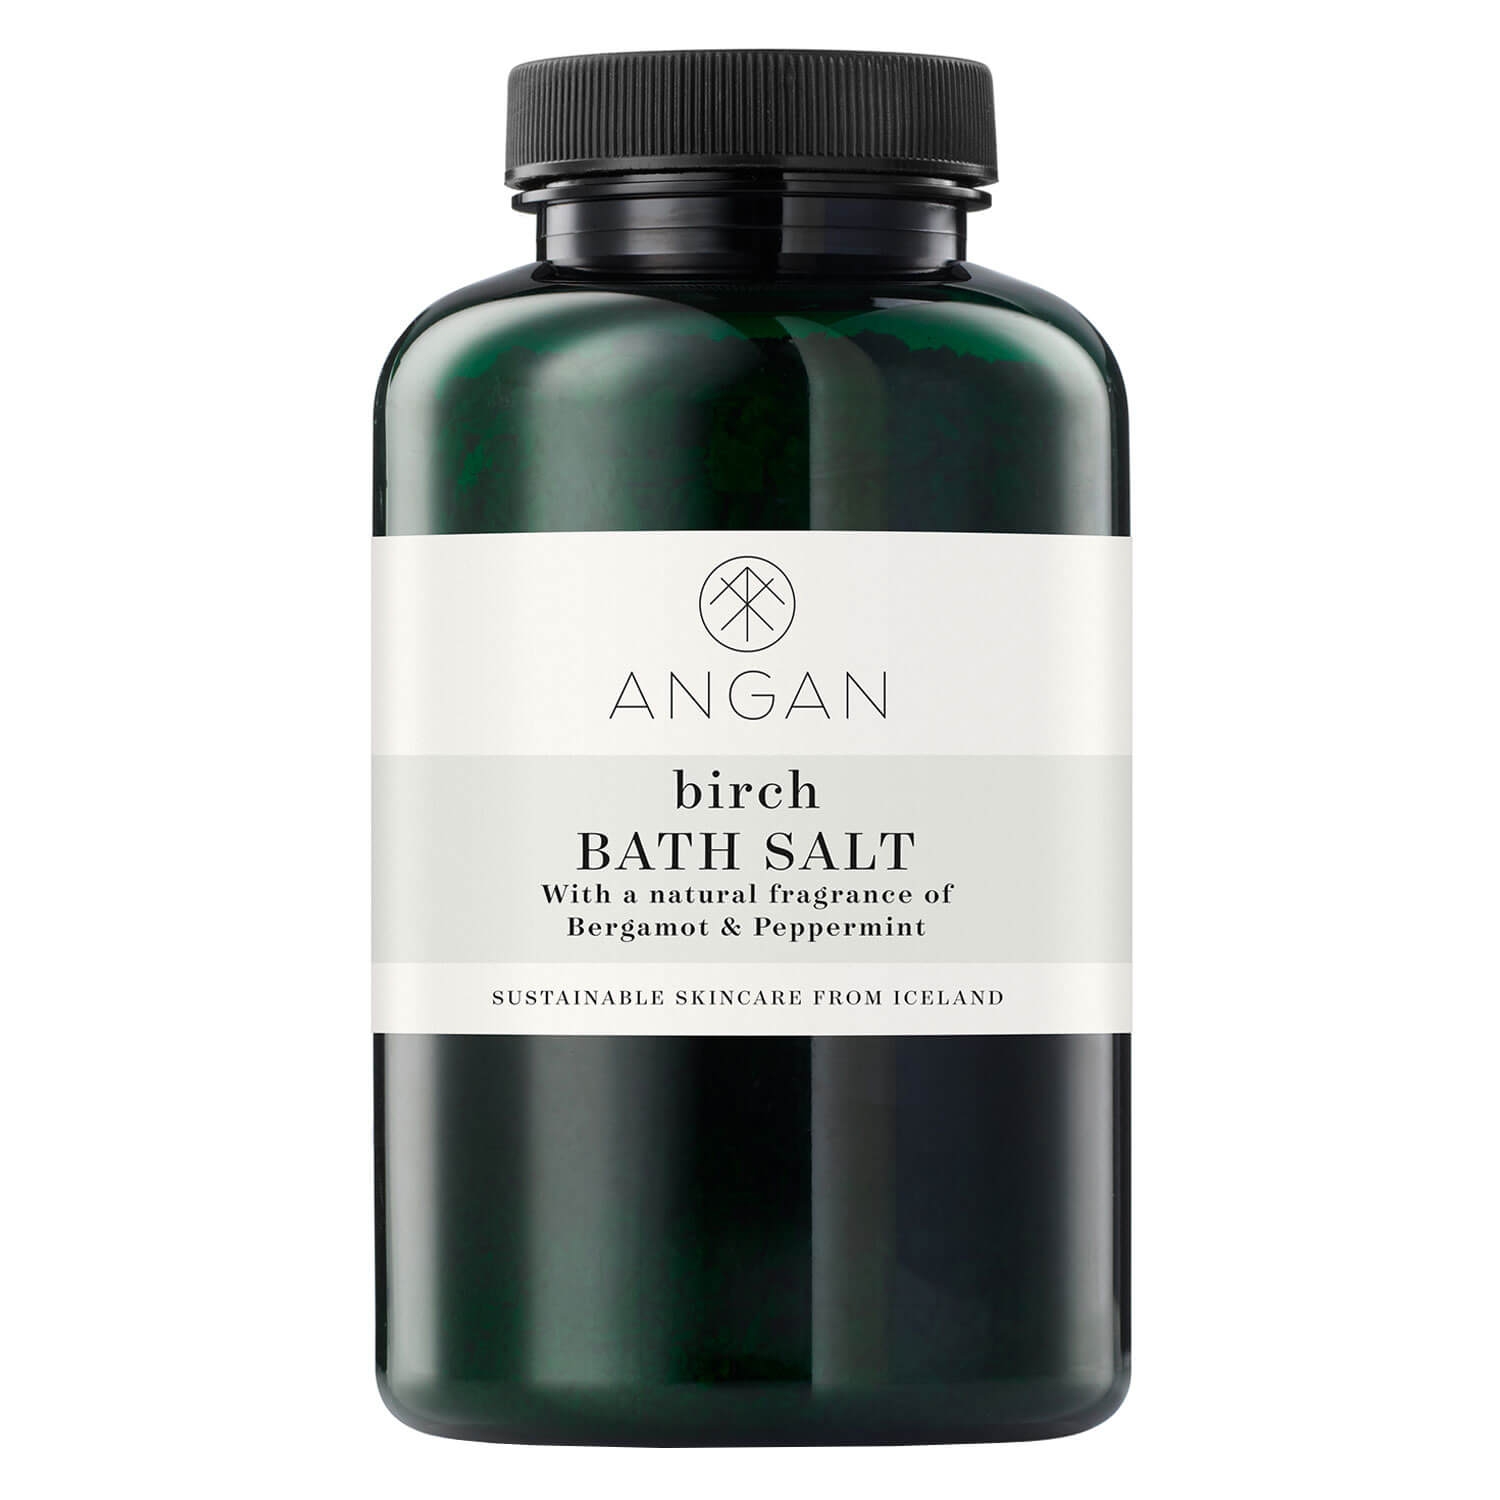 Produktbild von ANGAN - Birch Bath Salt